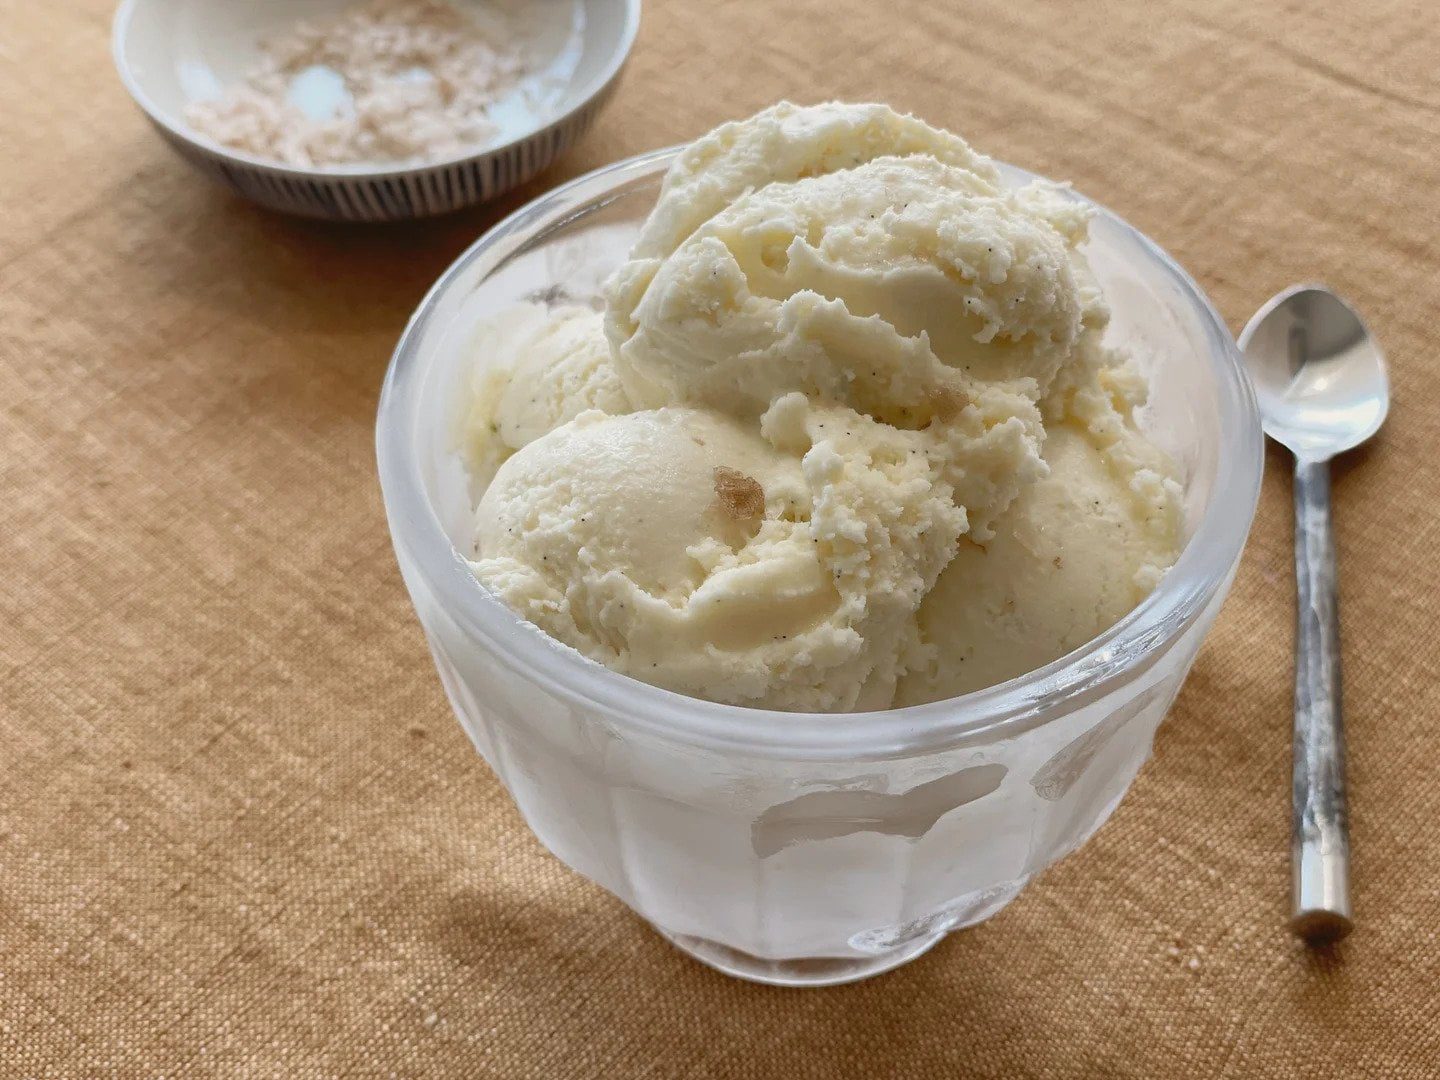 înghețată de vanilie într-un bol